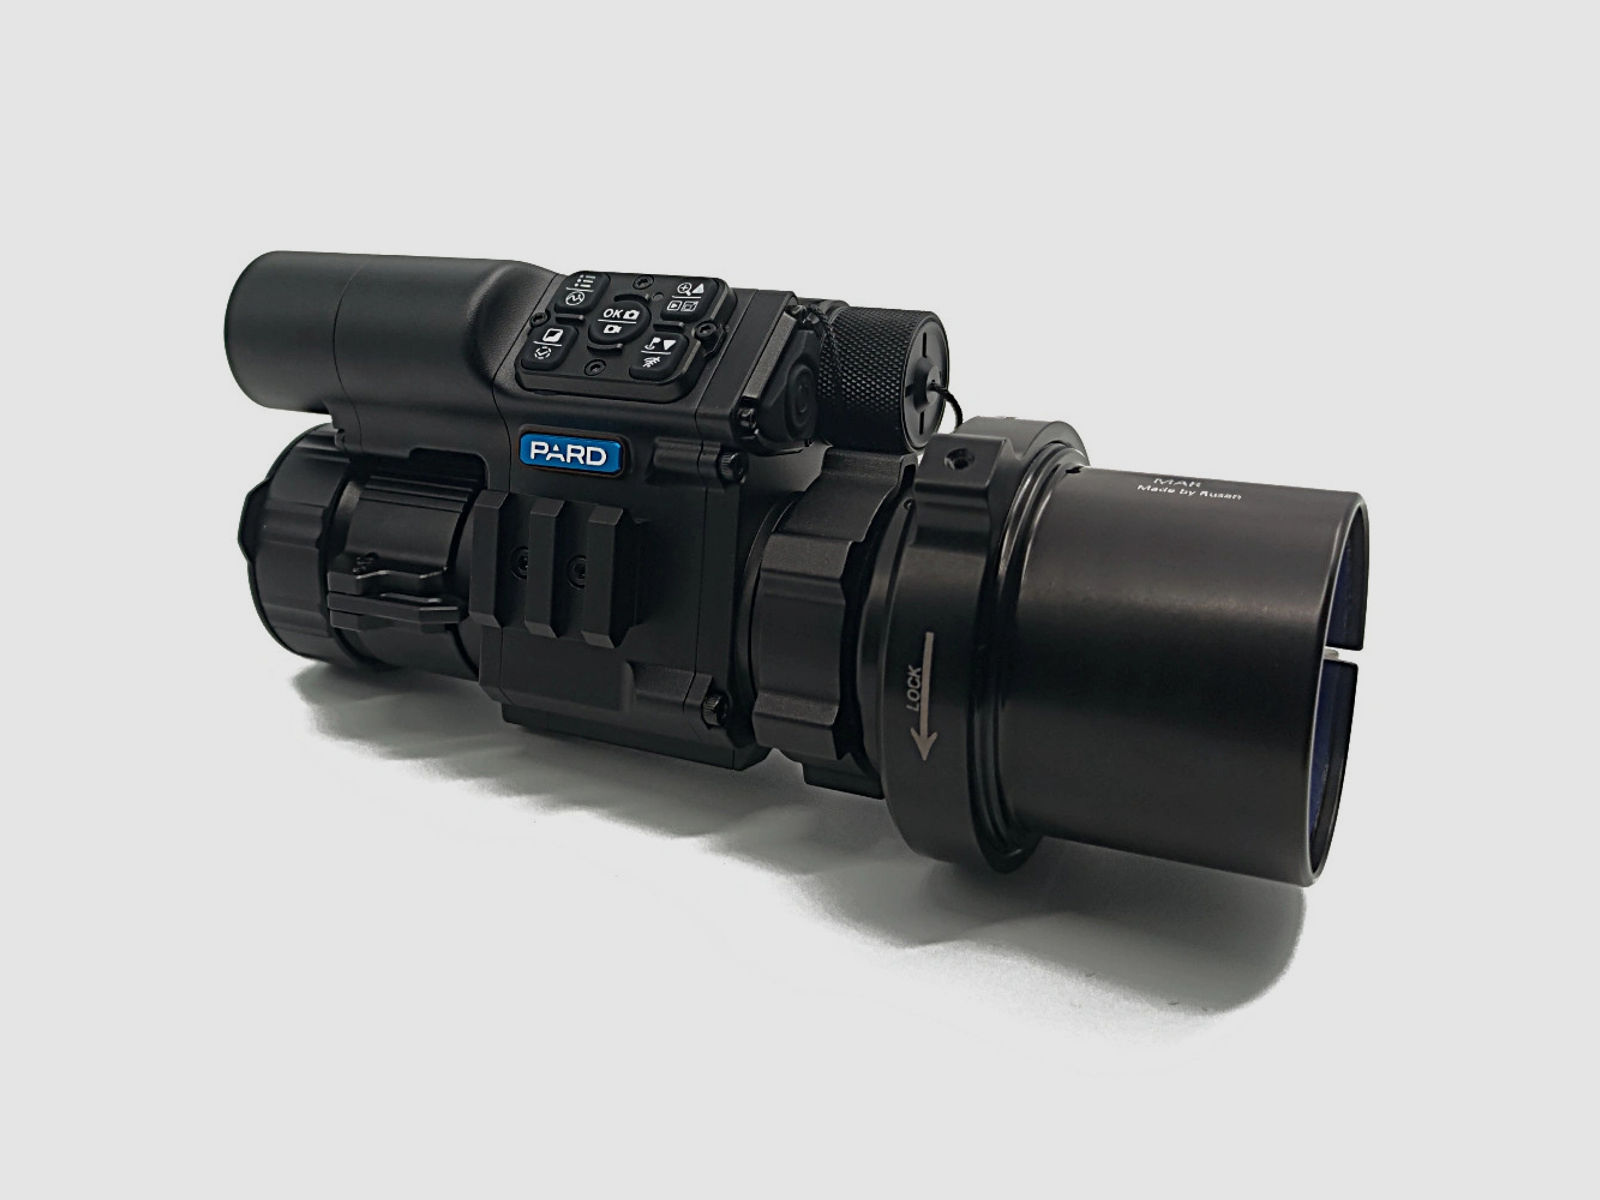 PARD FD1 Nachtsicht 3 in 1 Vorsatz, Monokular & Zielfernrohr - 940 nm mit LRF 67 mm RUSAN MAR + RUSAN MCR